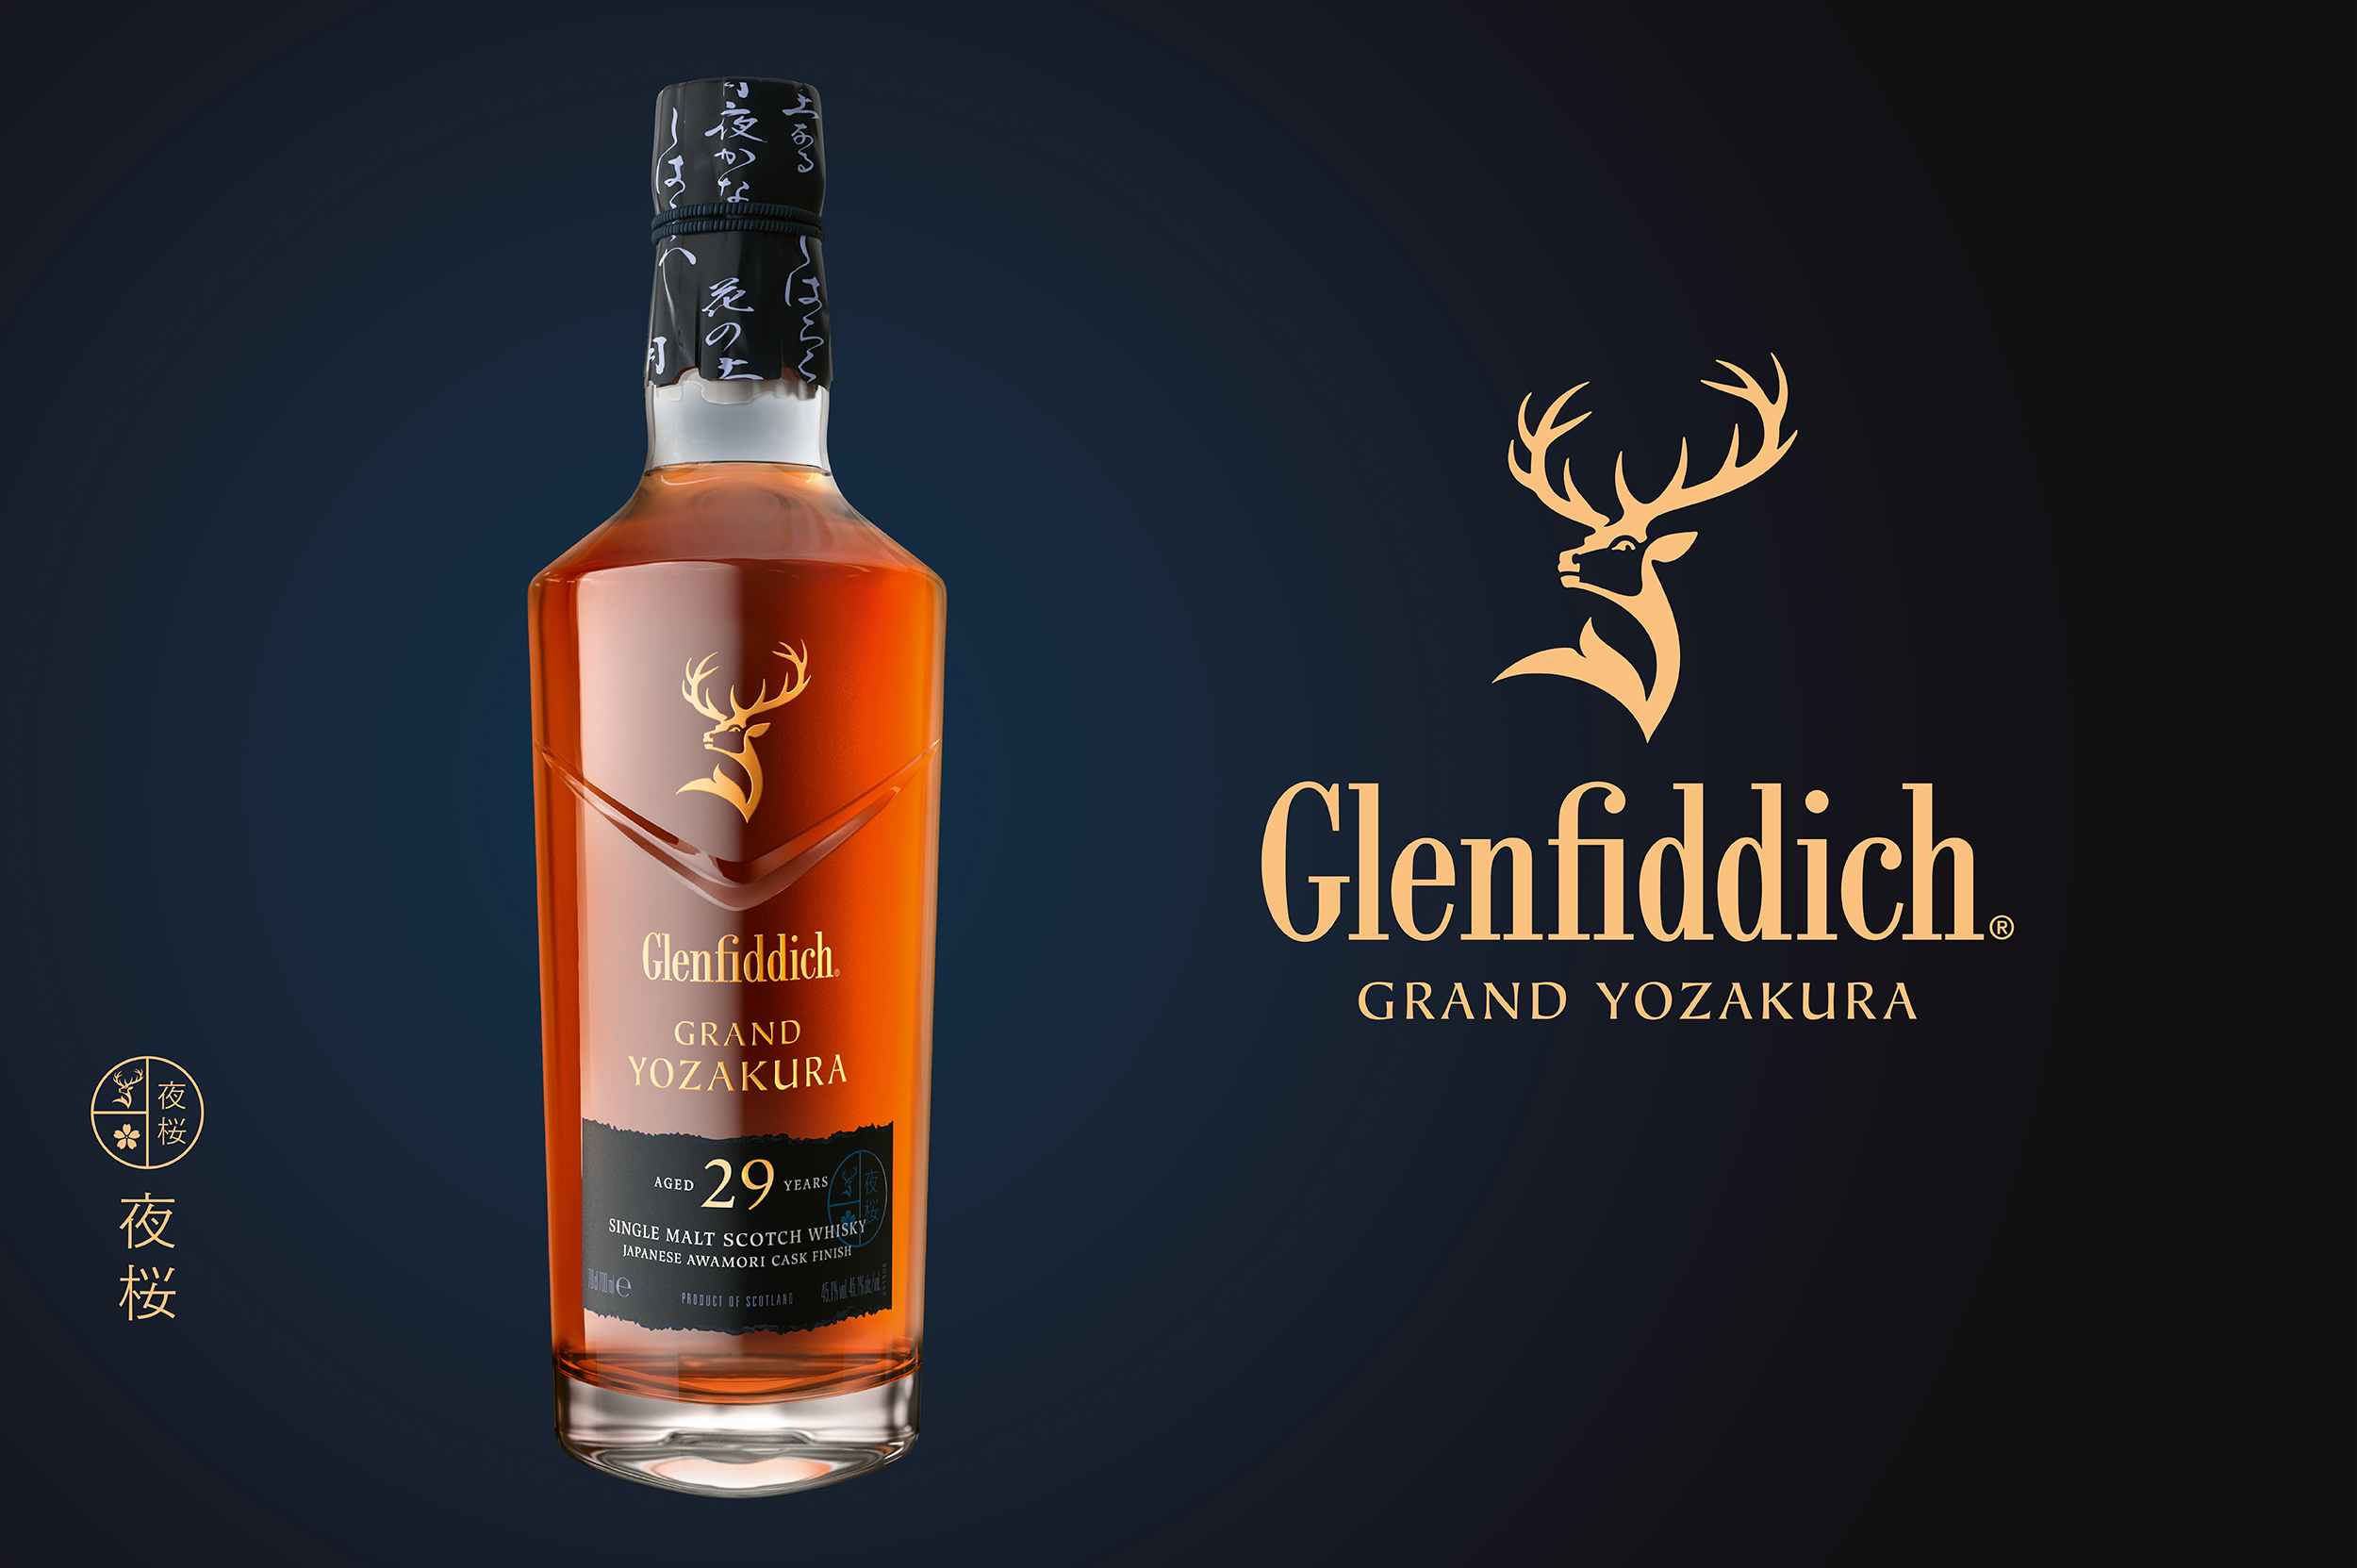 Glenfiddich Grand Yozakura – limitierte Whisky-Edition vereint schottische und japanische Aromen